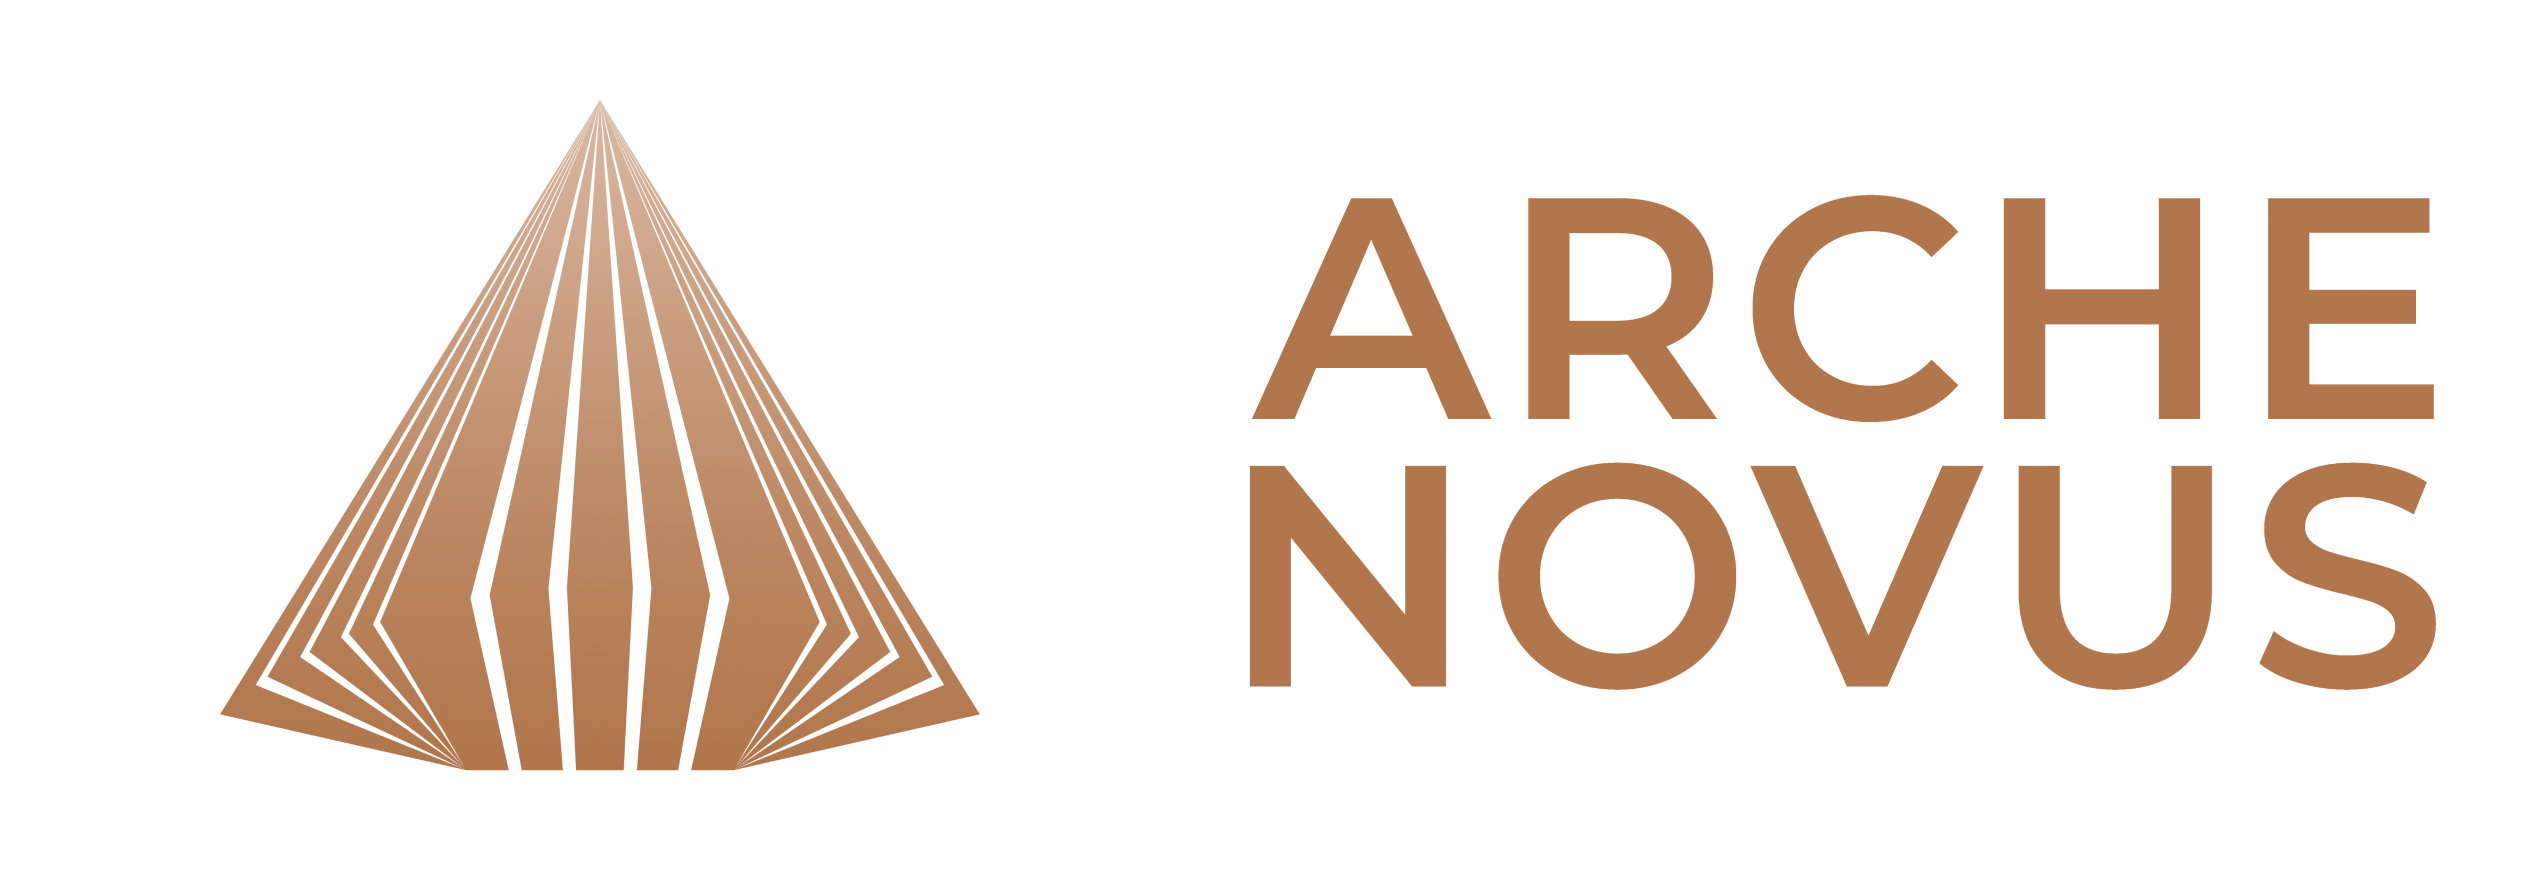 Arche Novus